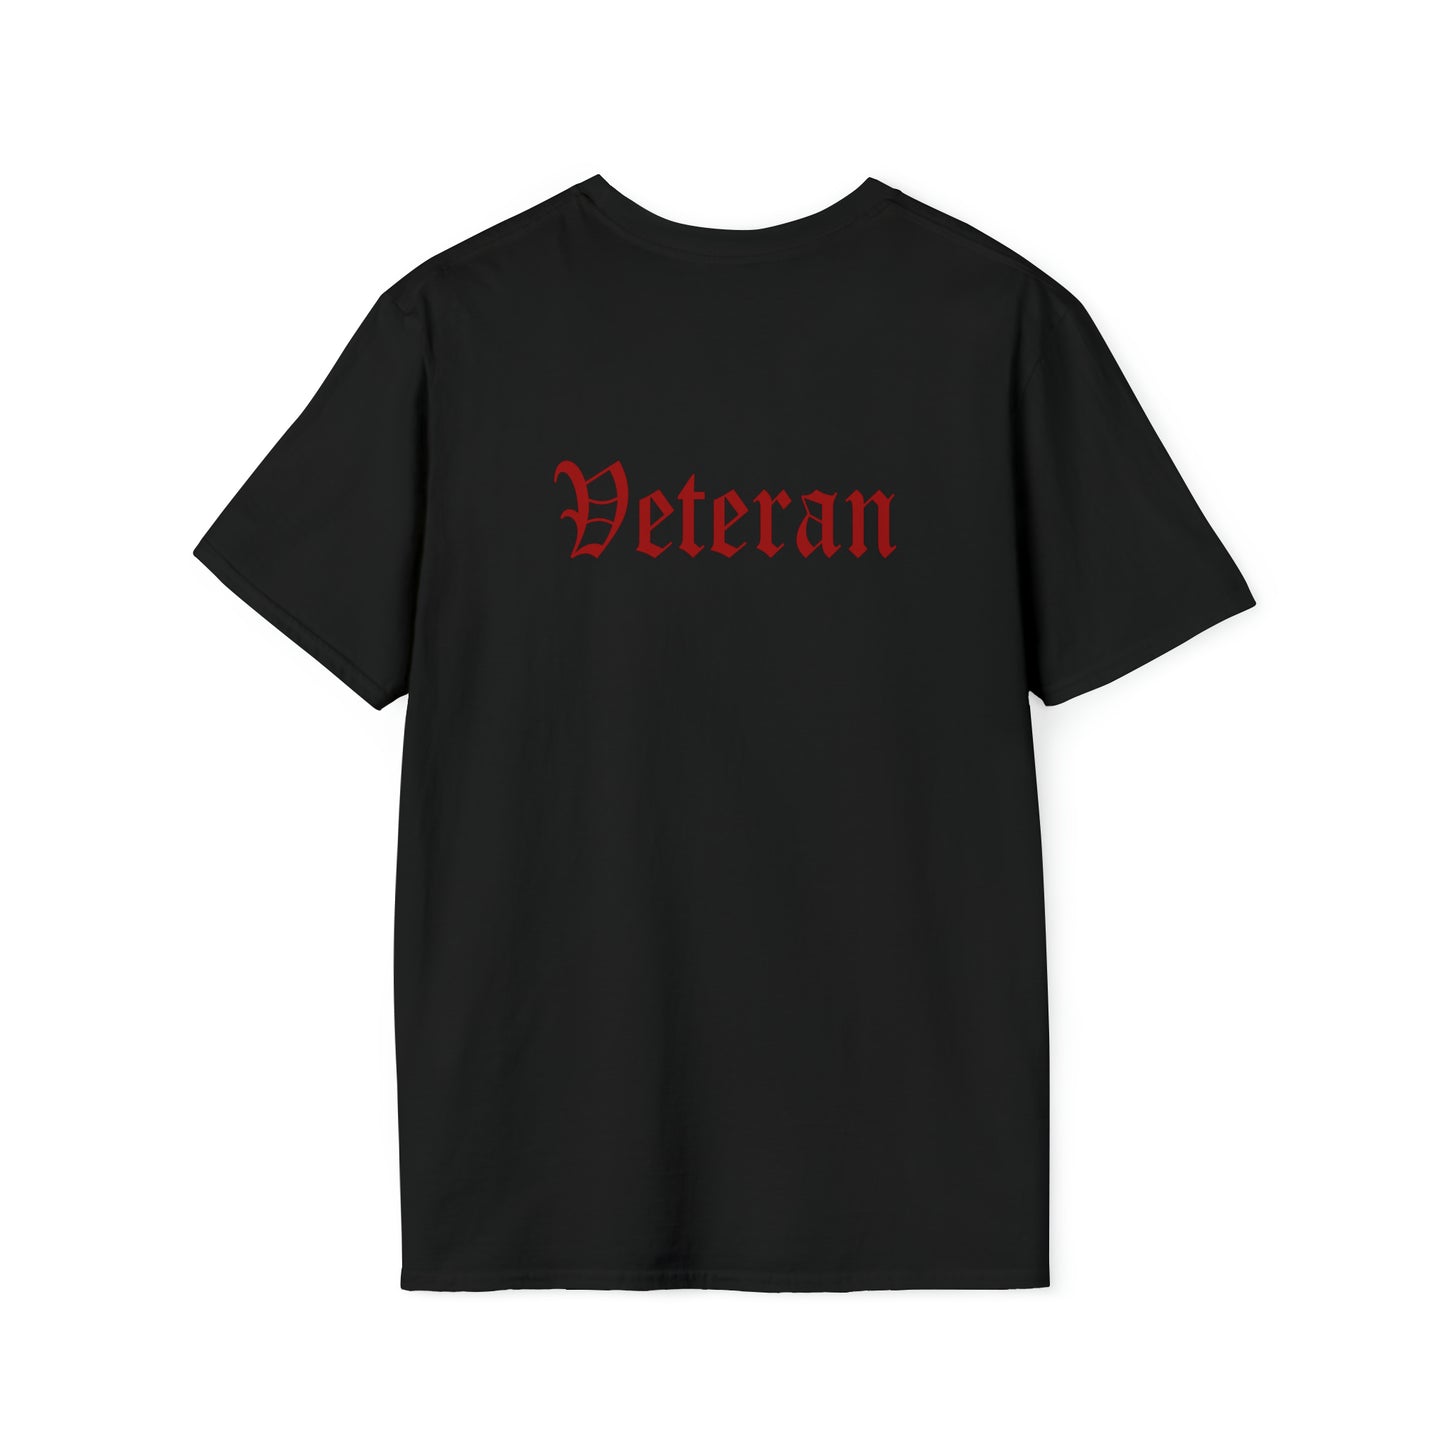 Emeritus - Veteran Shirt